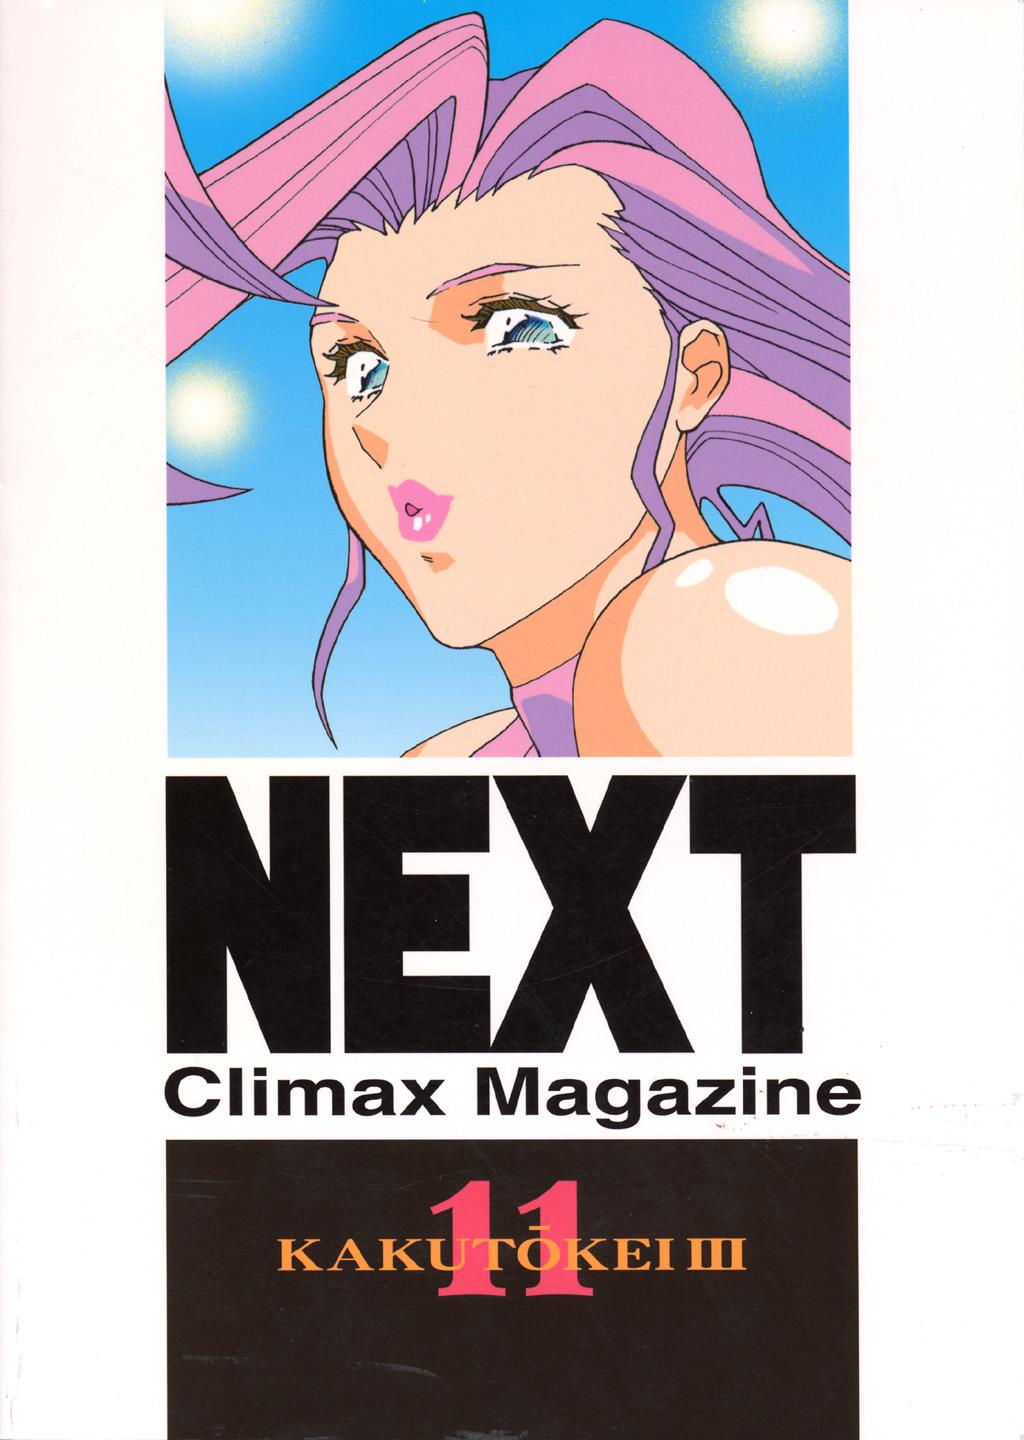 Next Climax Magazine 11 - Kakutokei III 97